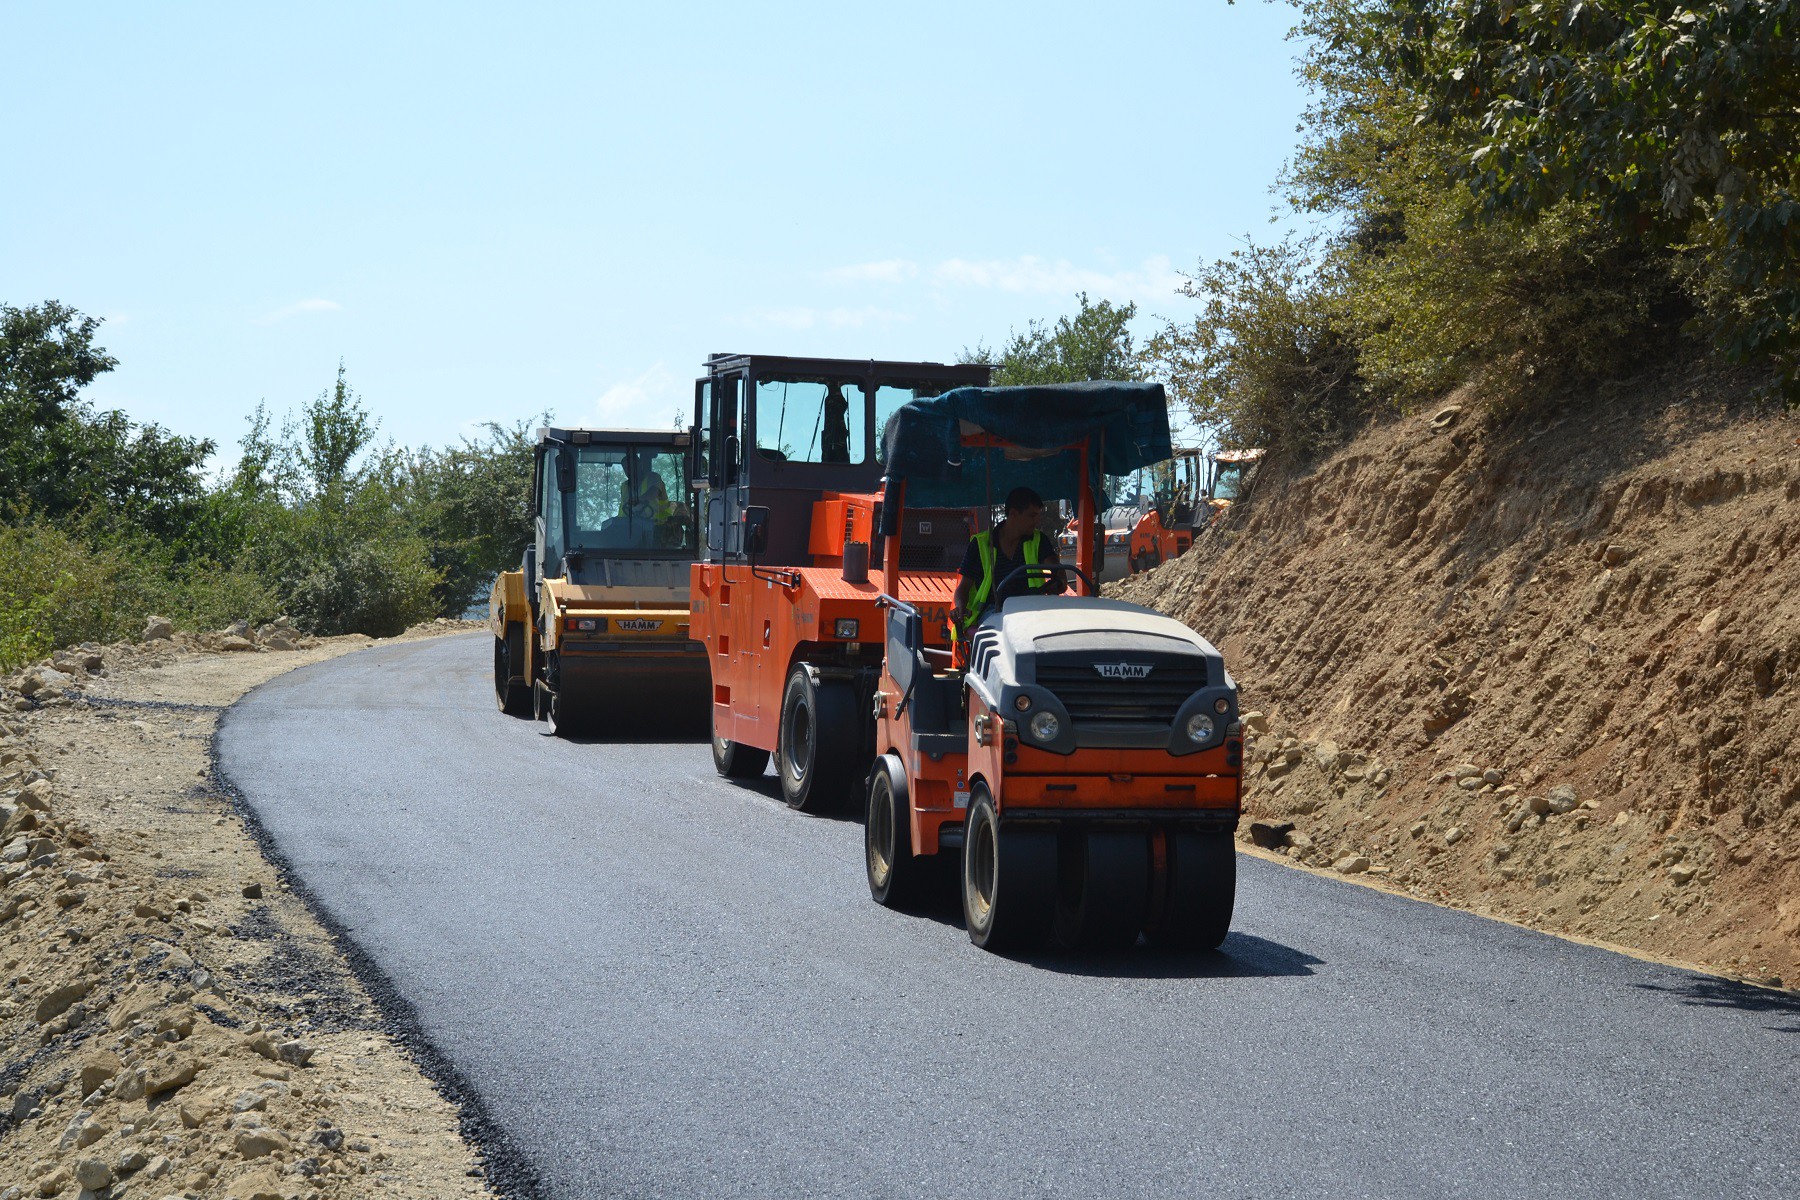 11 Lerikdə 28 km uzunluğa malik yolun yenidən qurulması bitmək üzrədir - VİDEO / FOTO